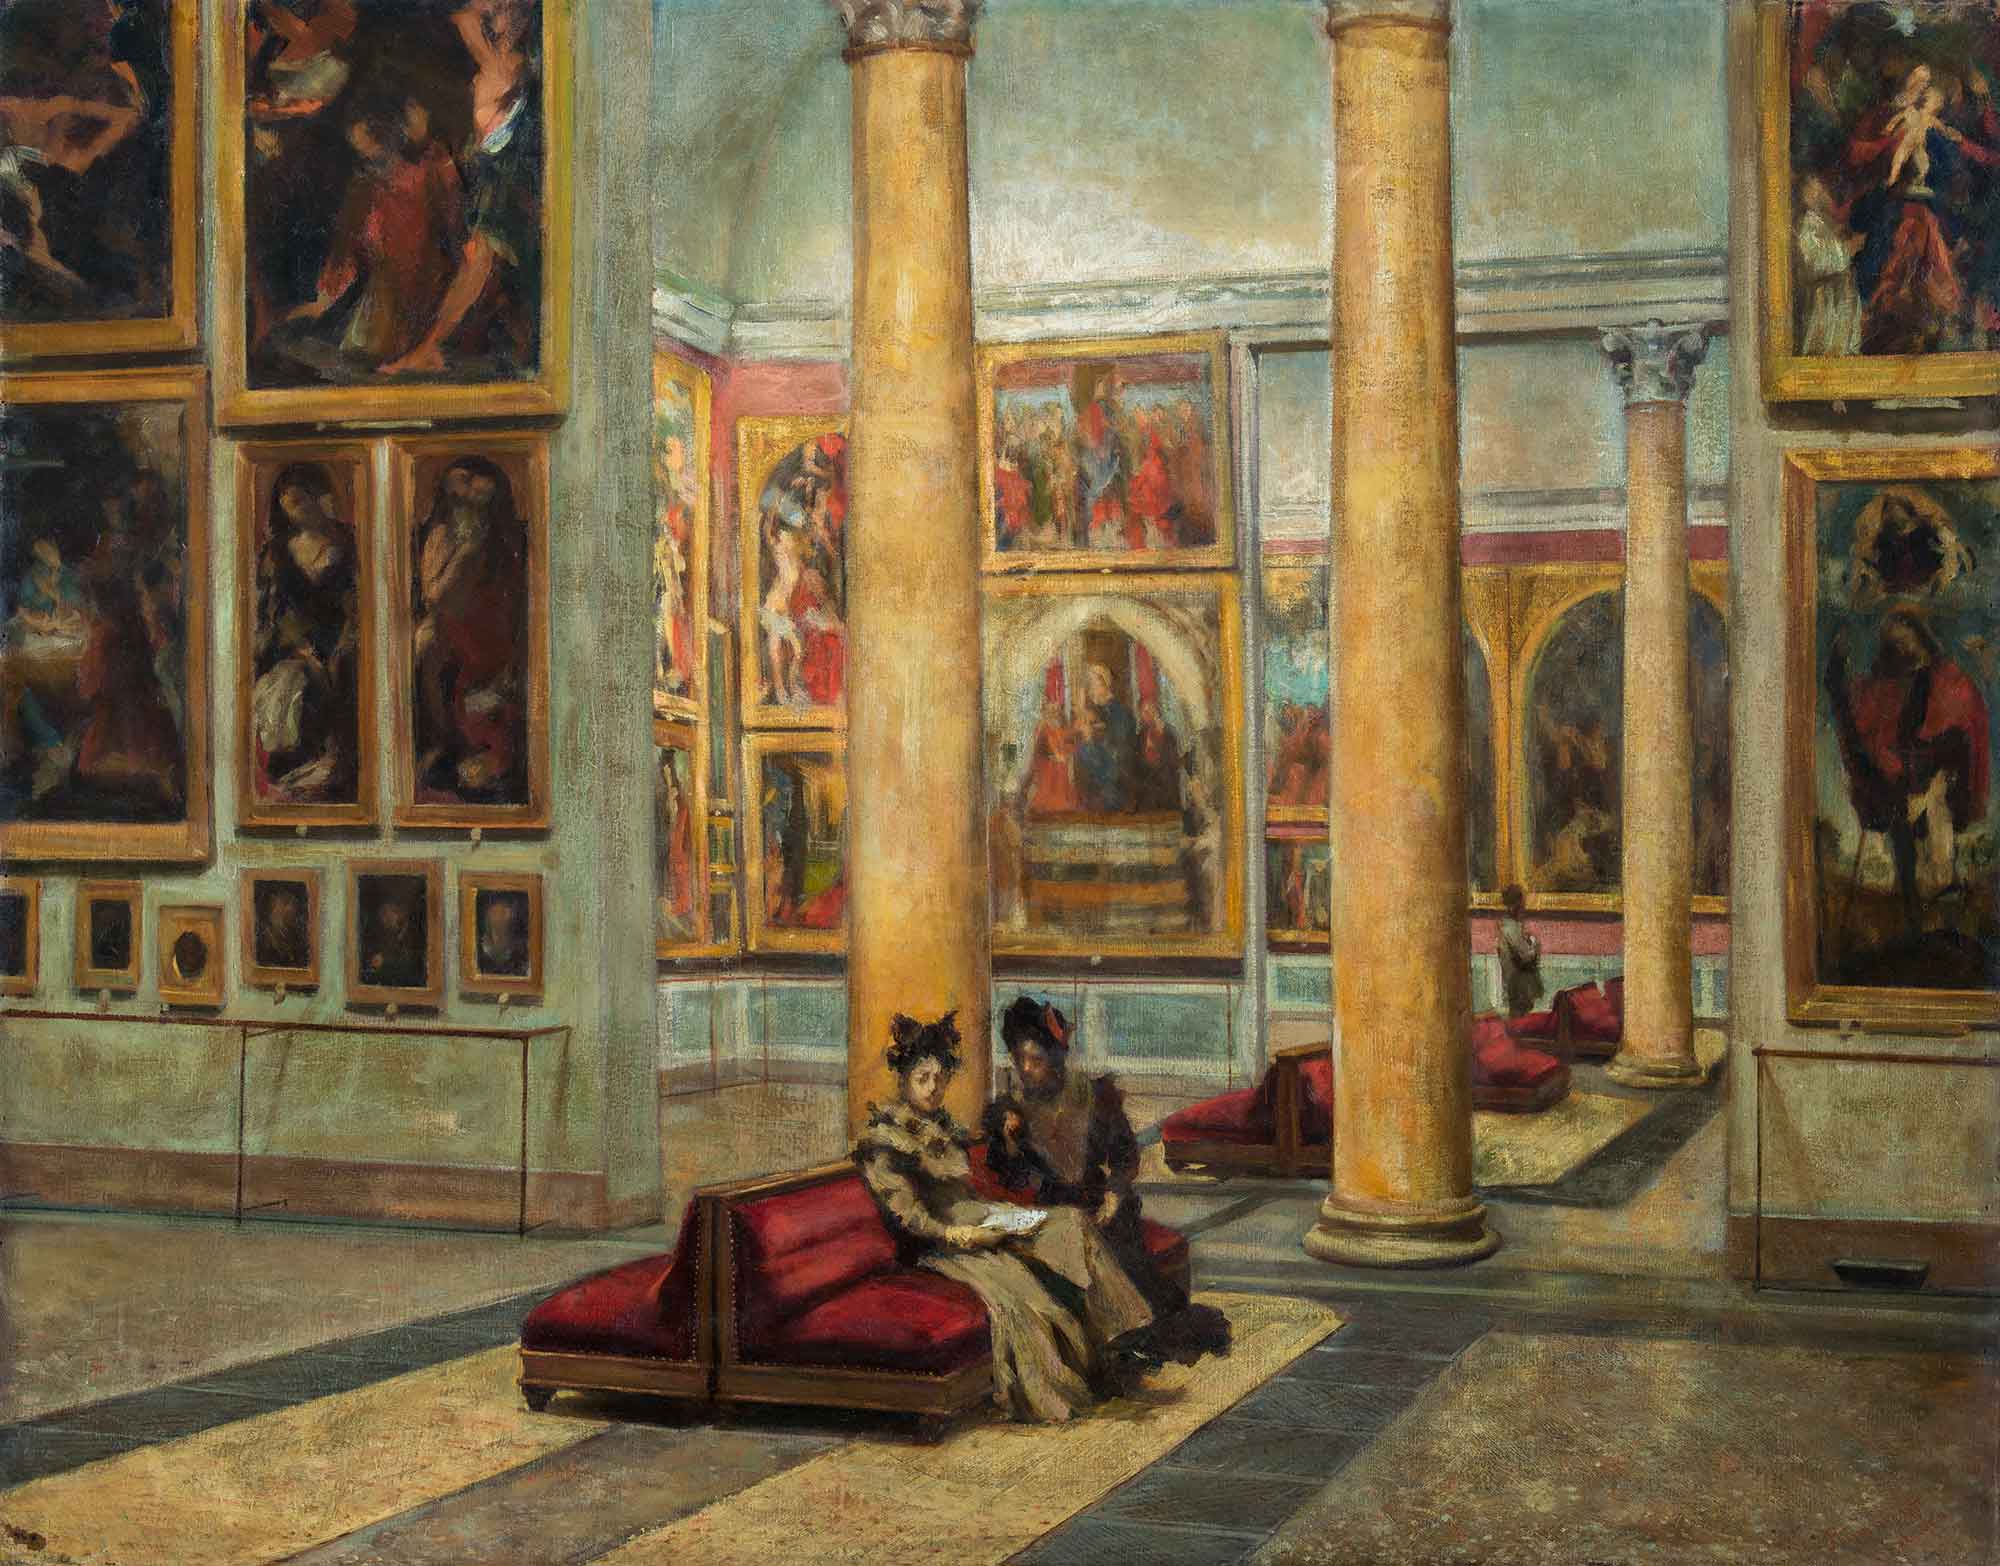 معرض بريرا الفني من الداخل by Angelo Ripamonti - 1880 - 1890م - 90 x 104 سم 